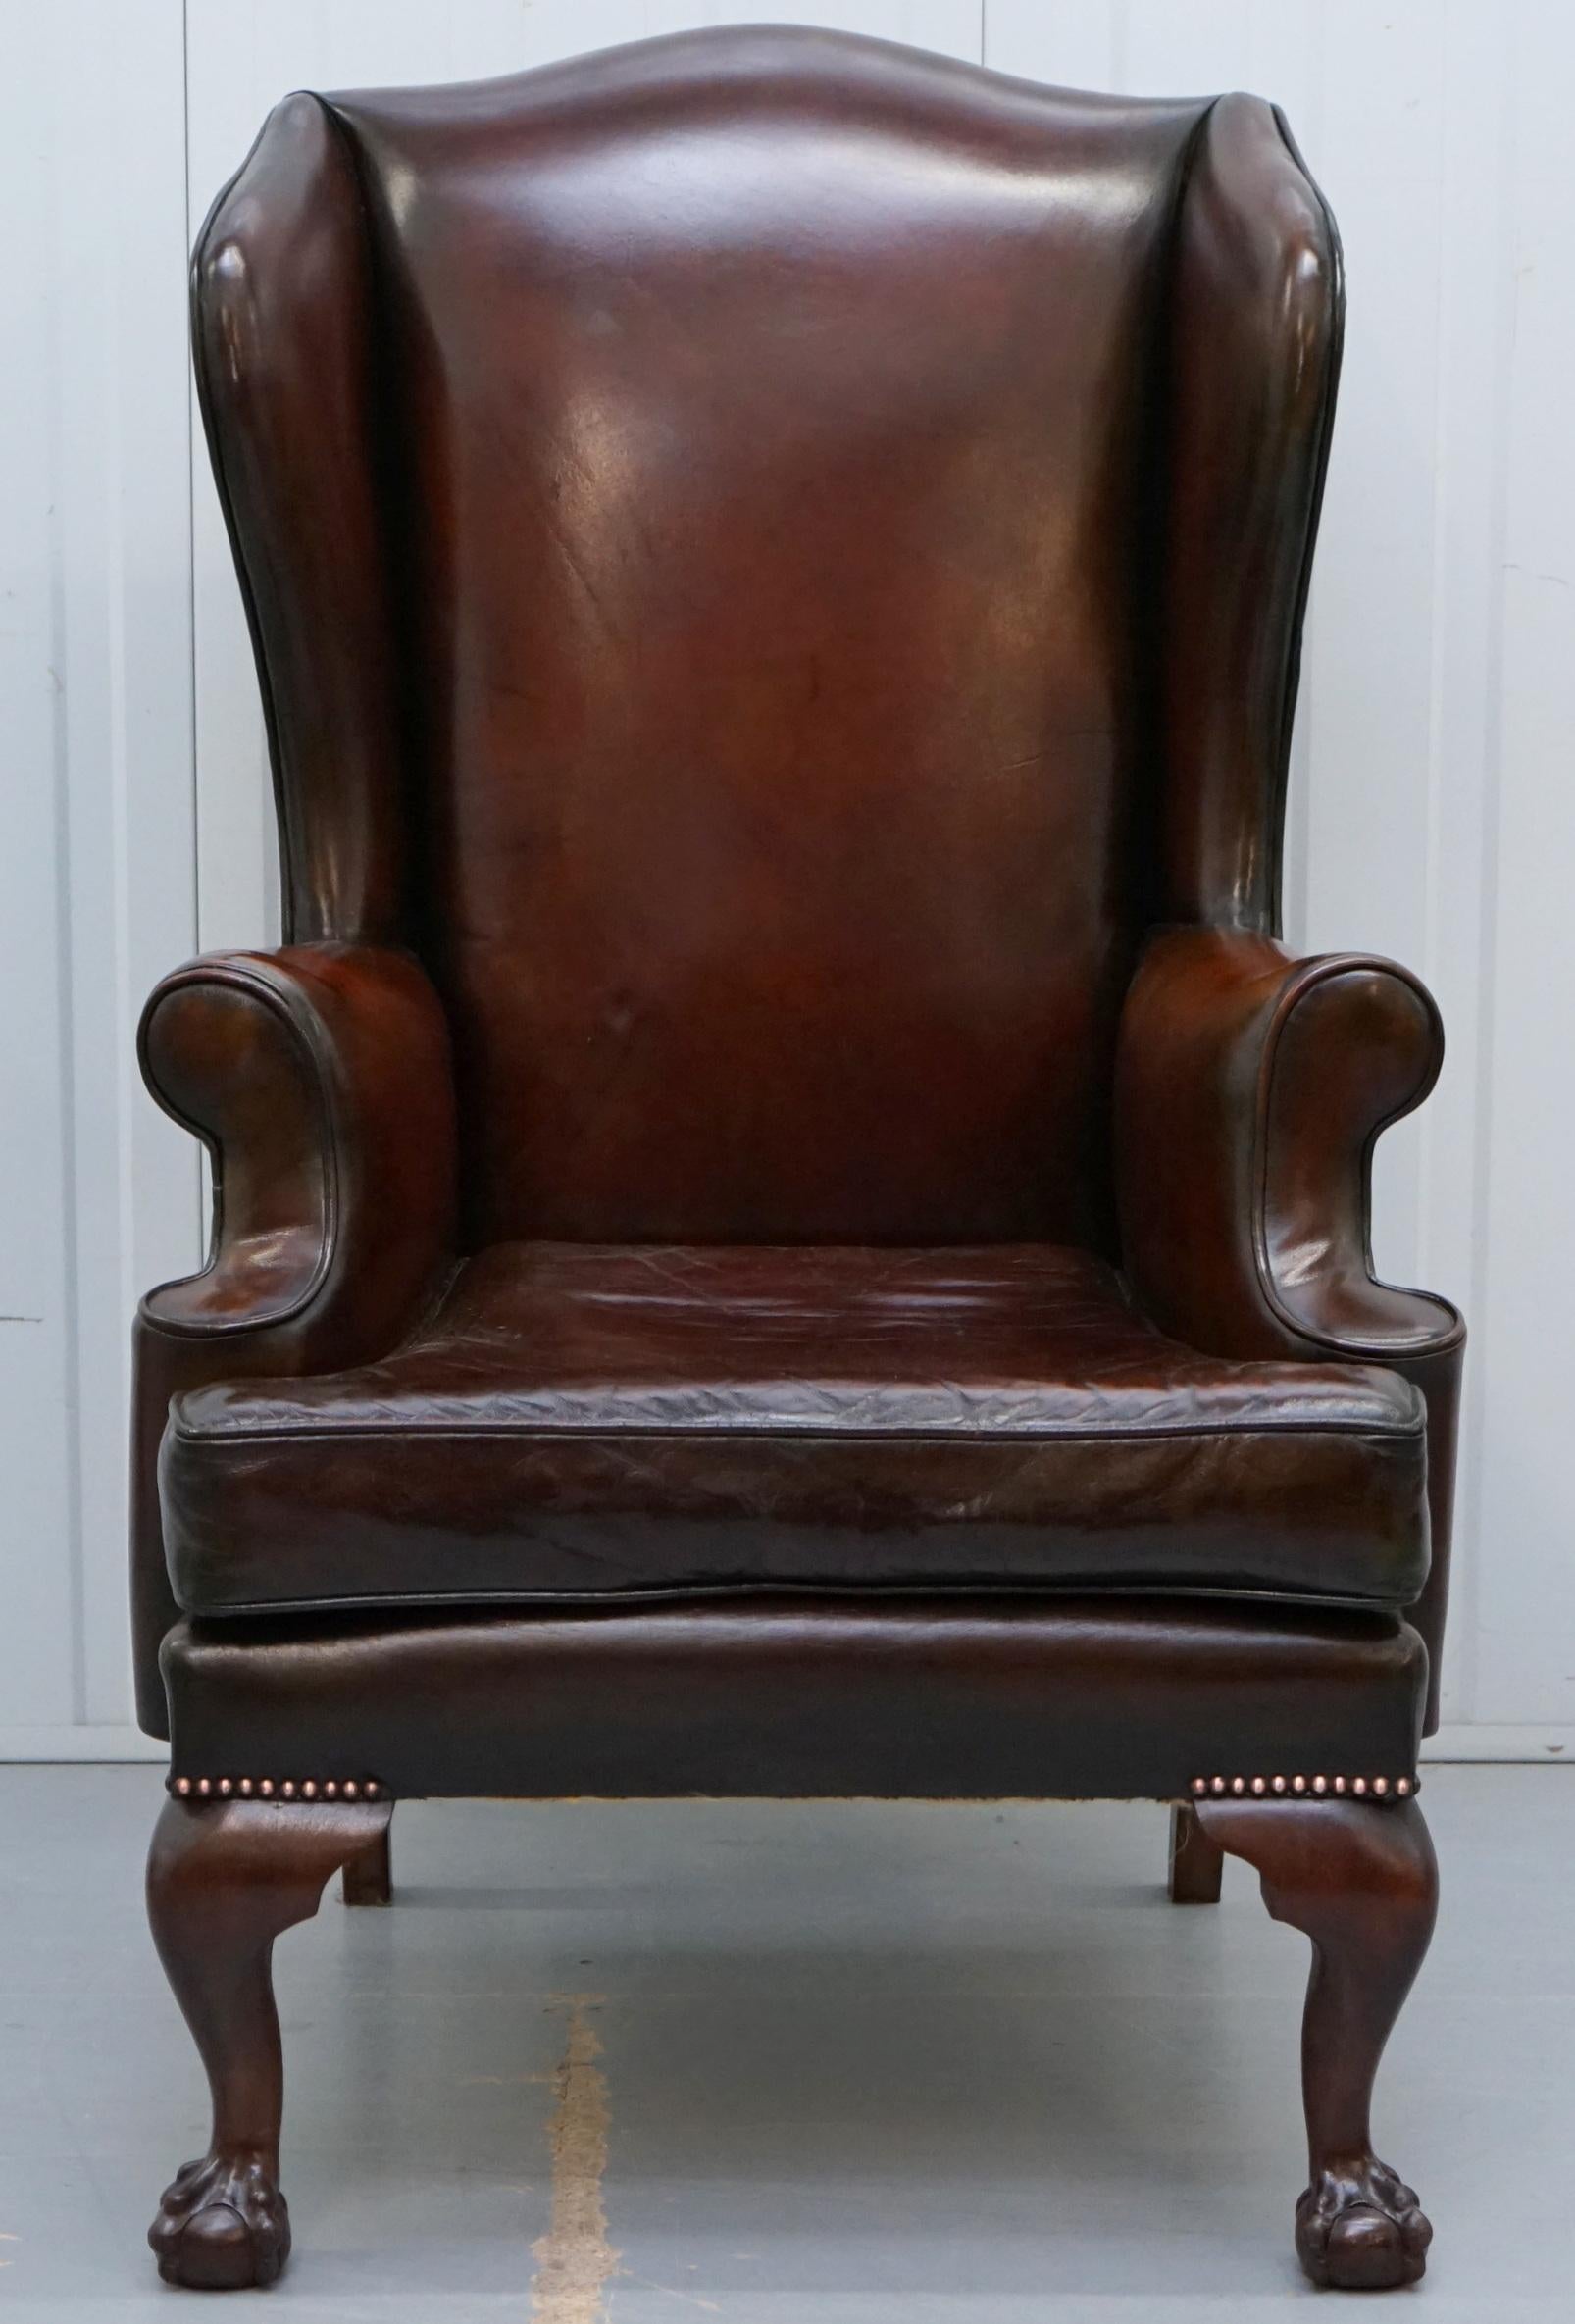 cogar chair